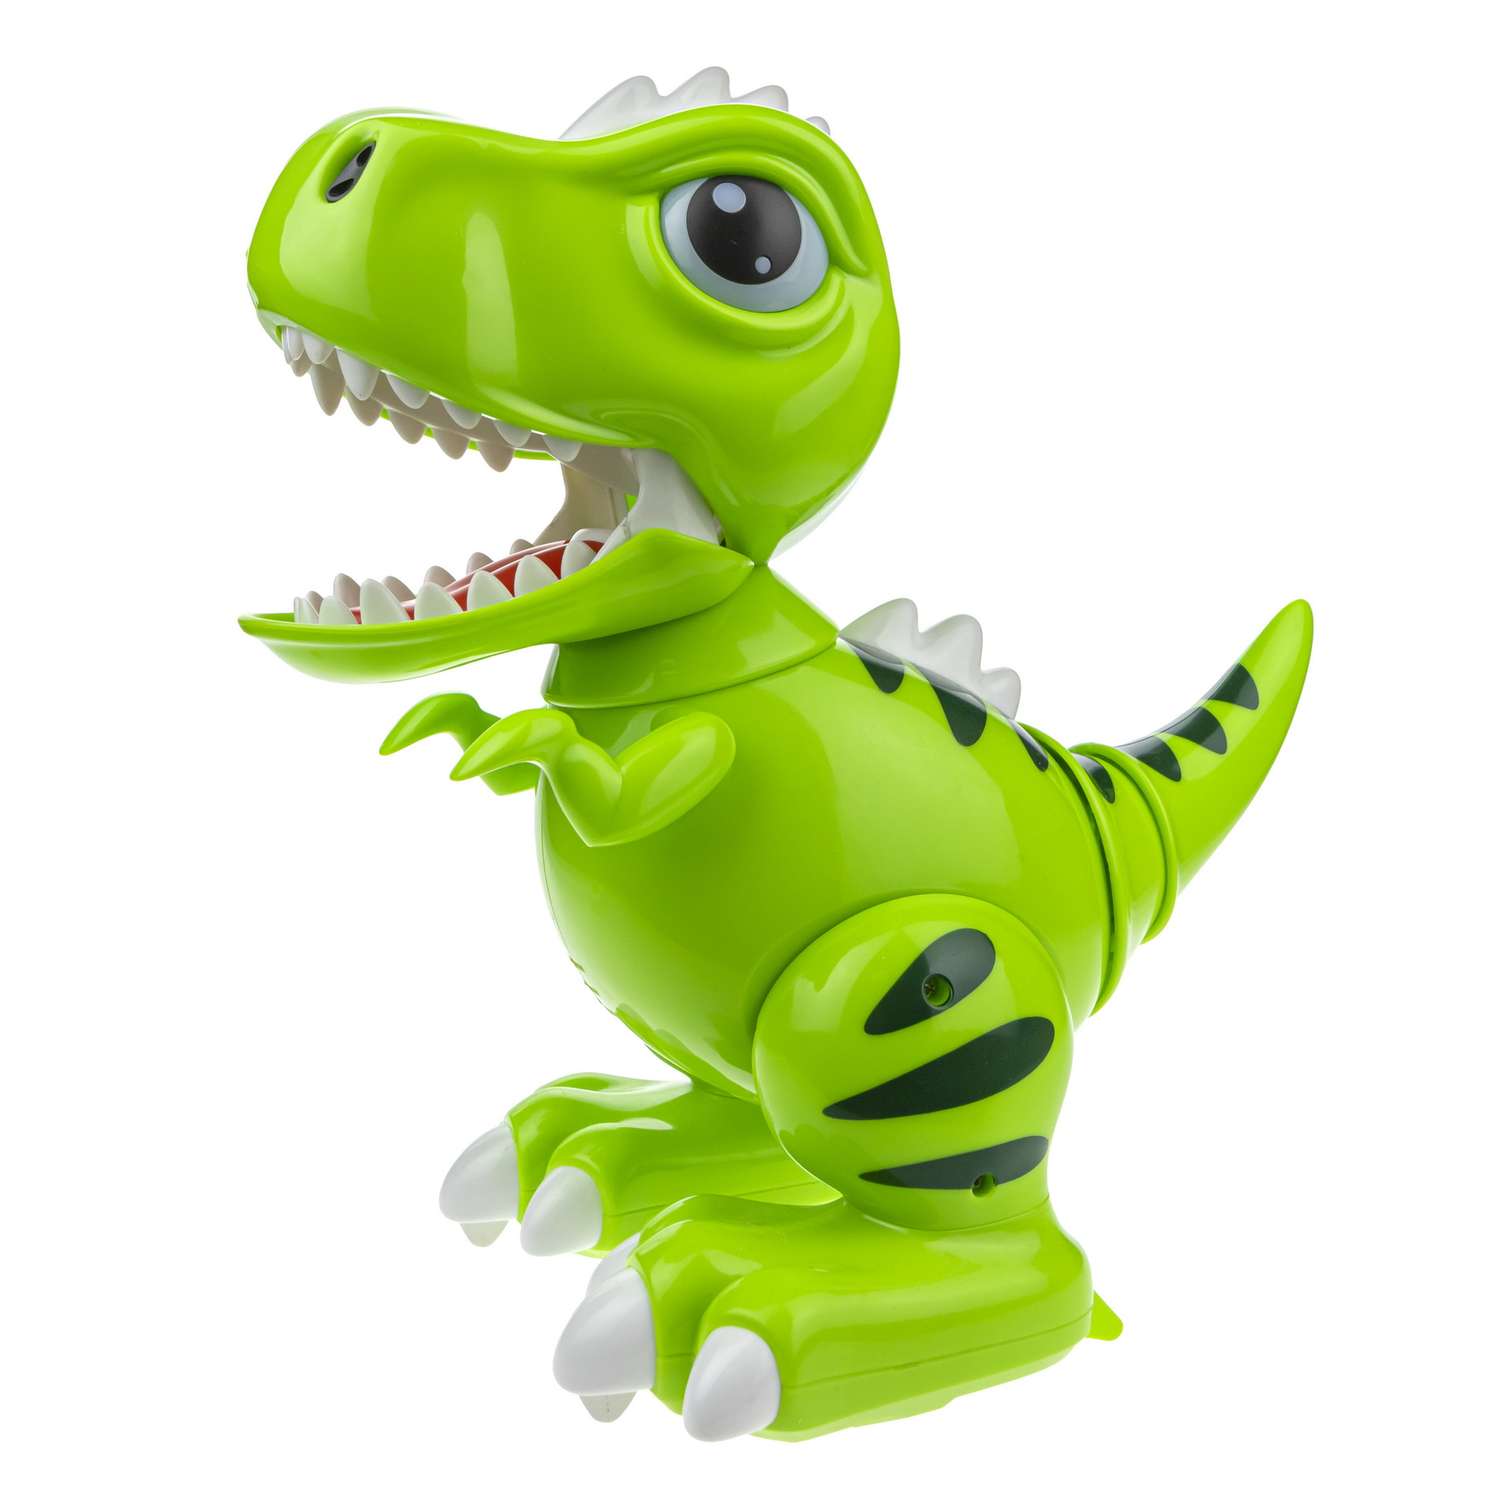 Интерактивная игрушка Robo Pets Динозавр Т-РЕКС зеленый на РУ со световыми звуковыми и эффектами движения - фото 4